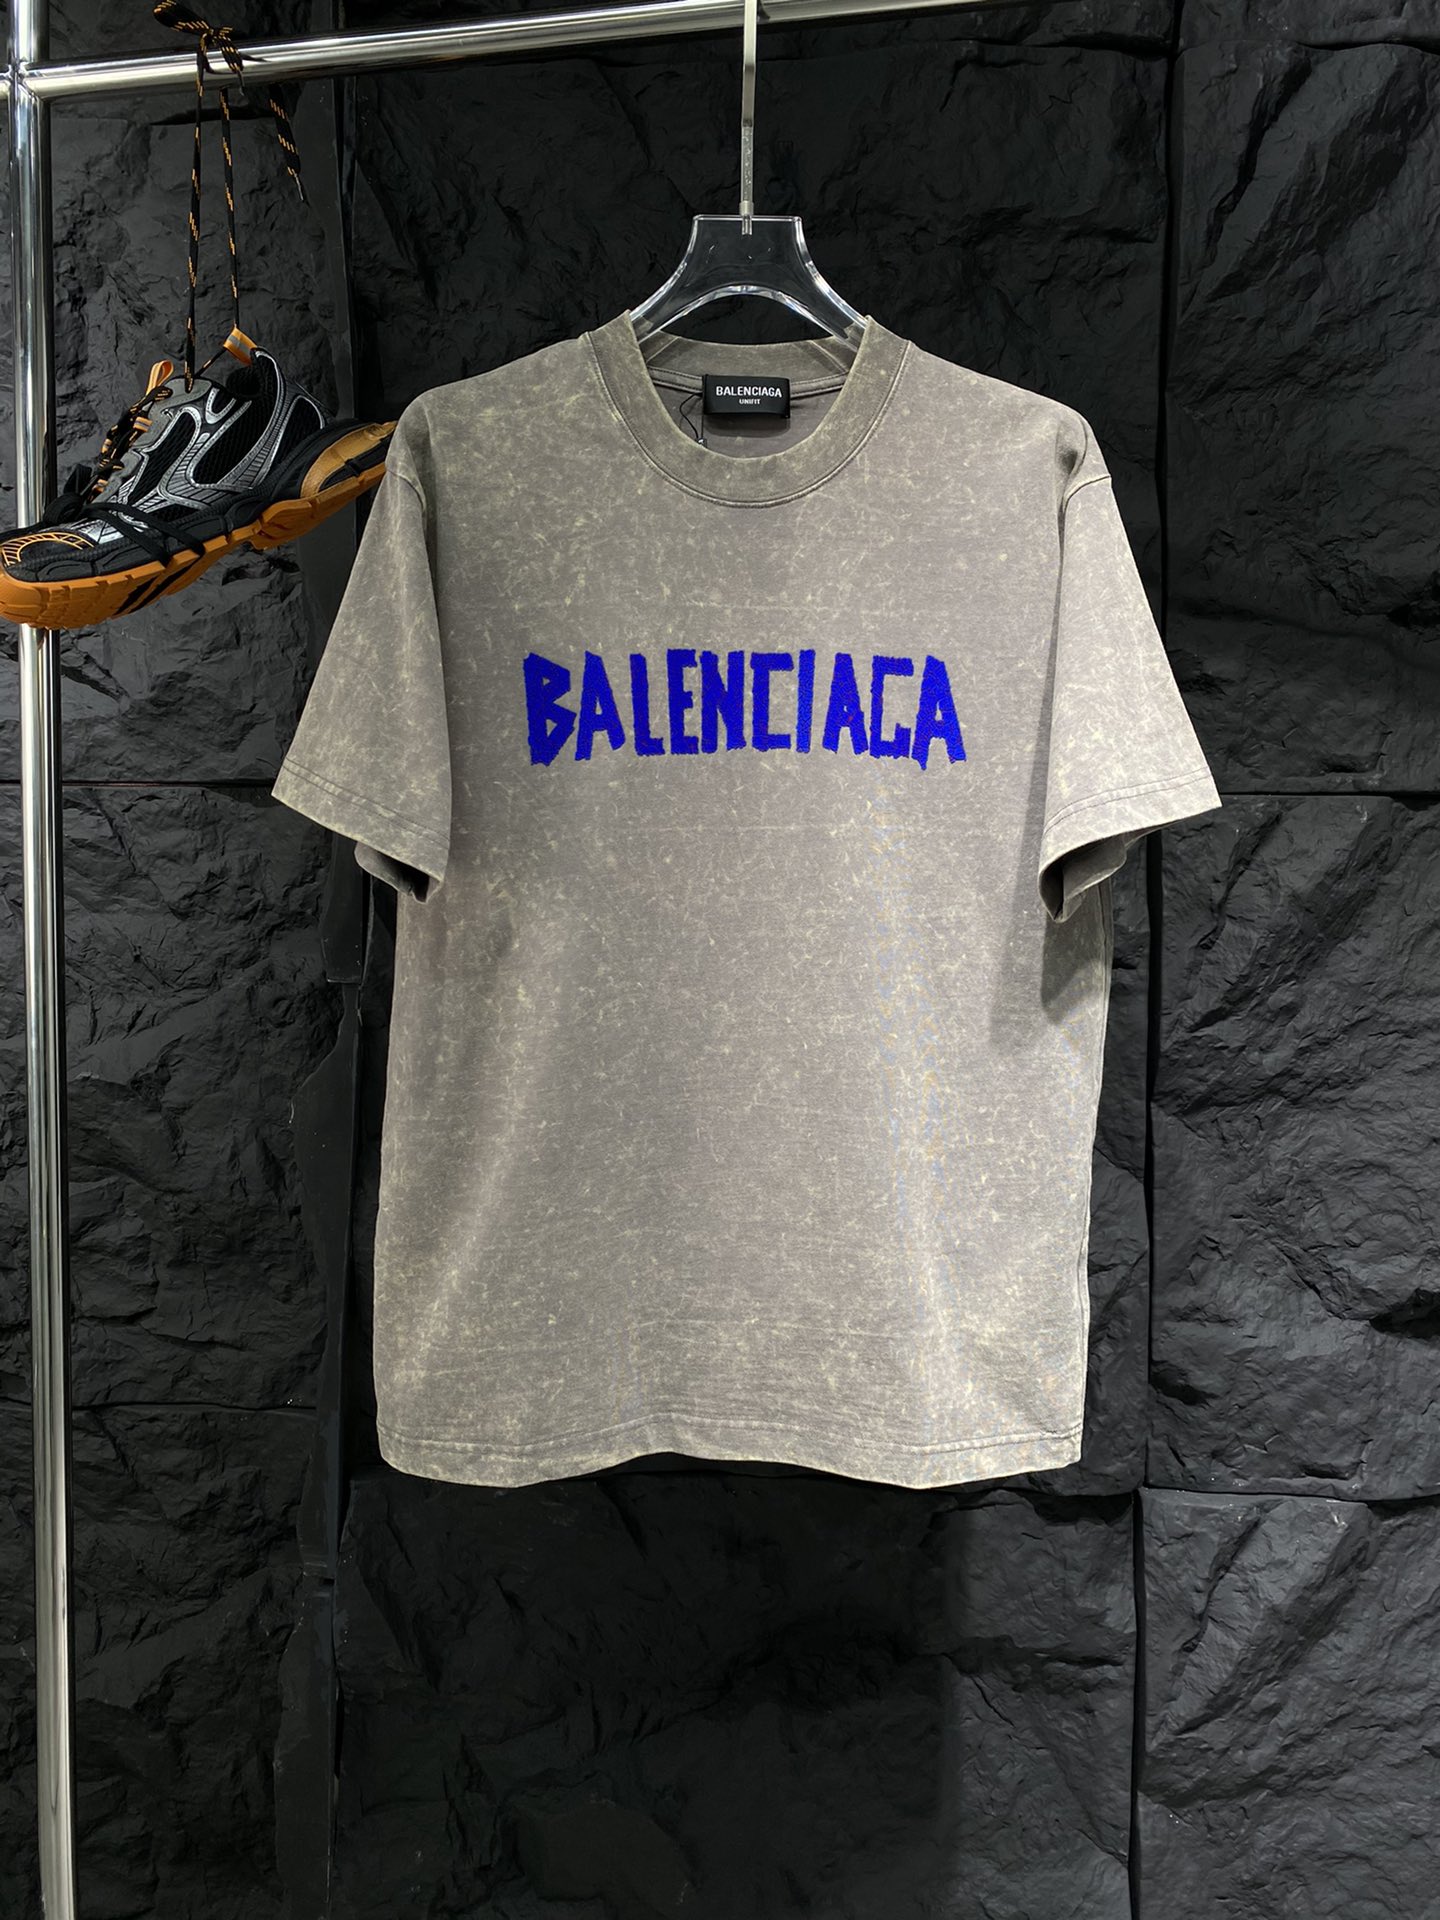 Balenciaga Kleding T-Shirt Unisex Katoen Lentecollectie